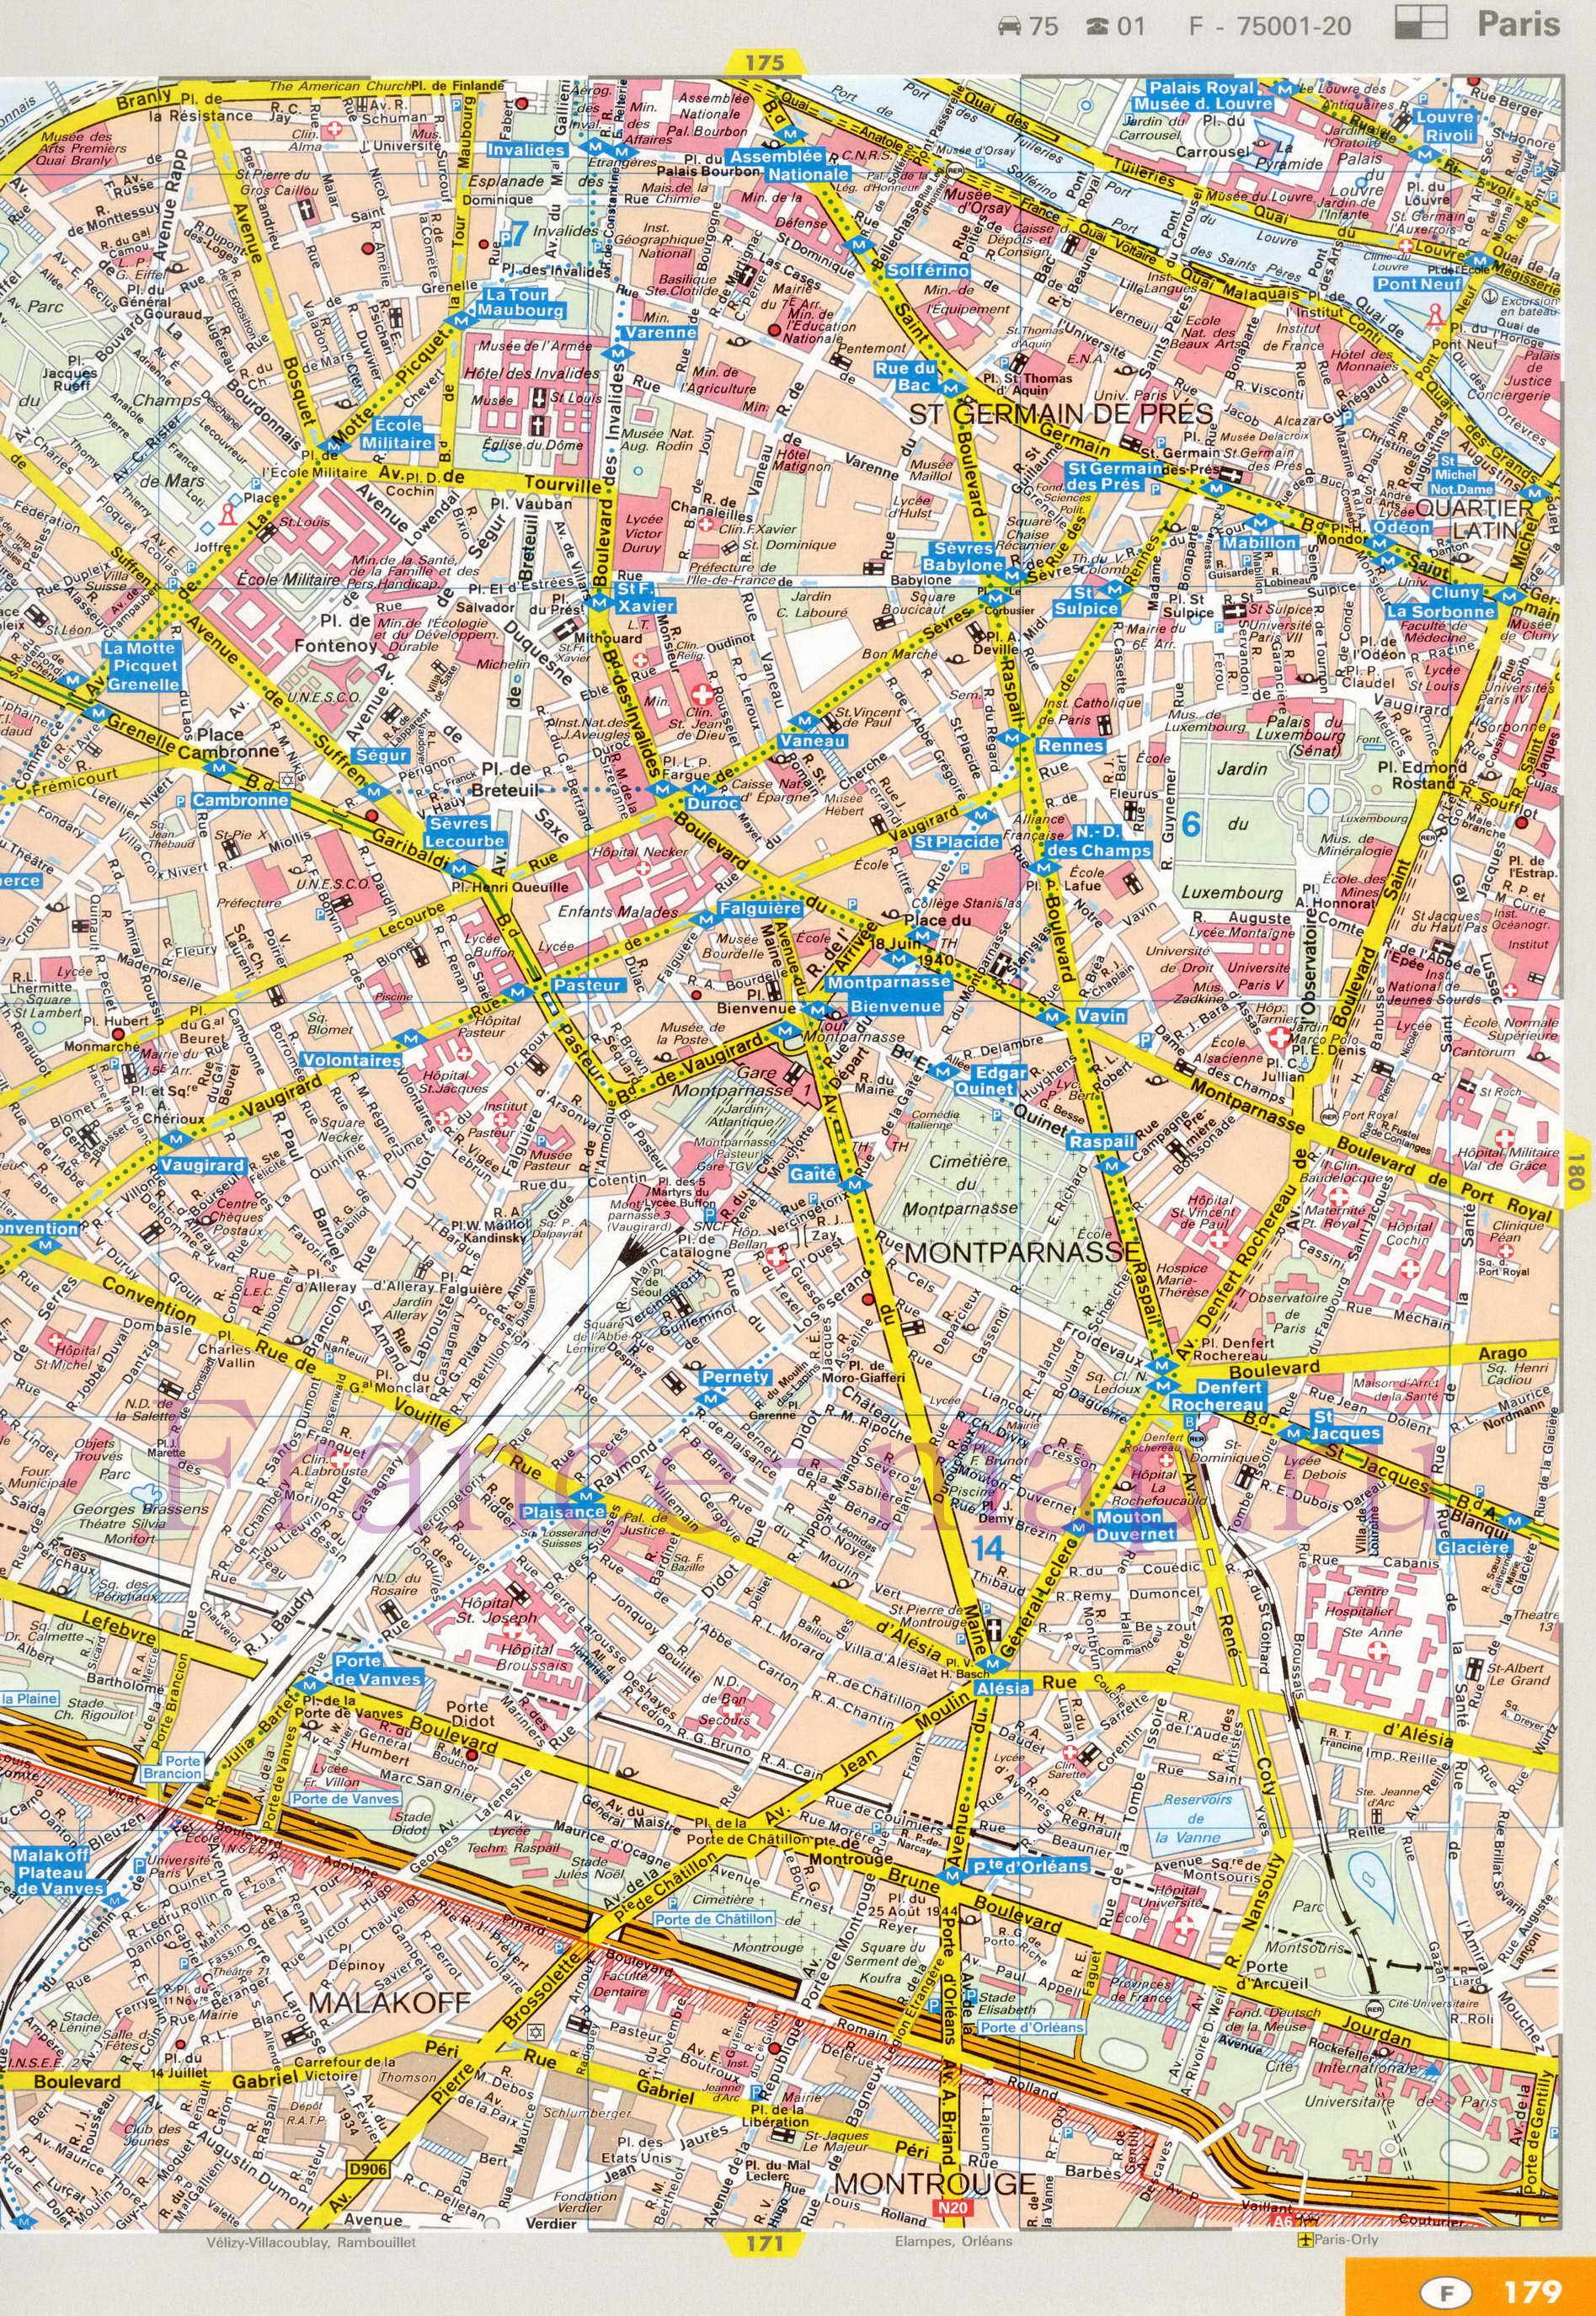 Карта улиц Парижа. Подробная карта Парижа с названиями улиц. Карта Парижа с улицами и достопримечательностями, B1 - 